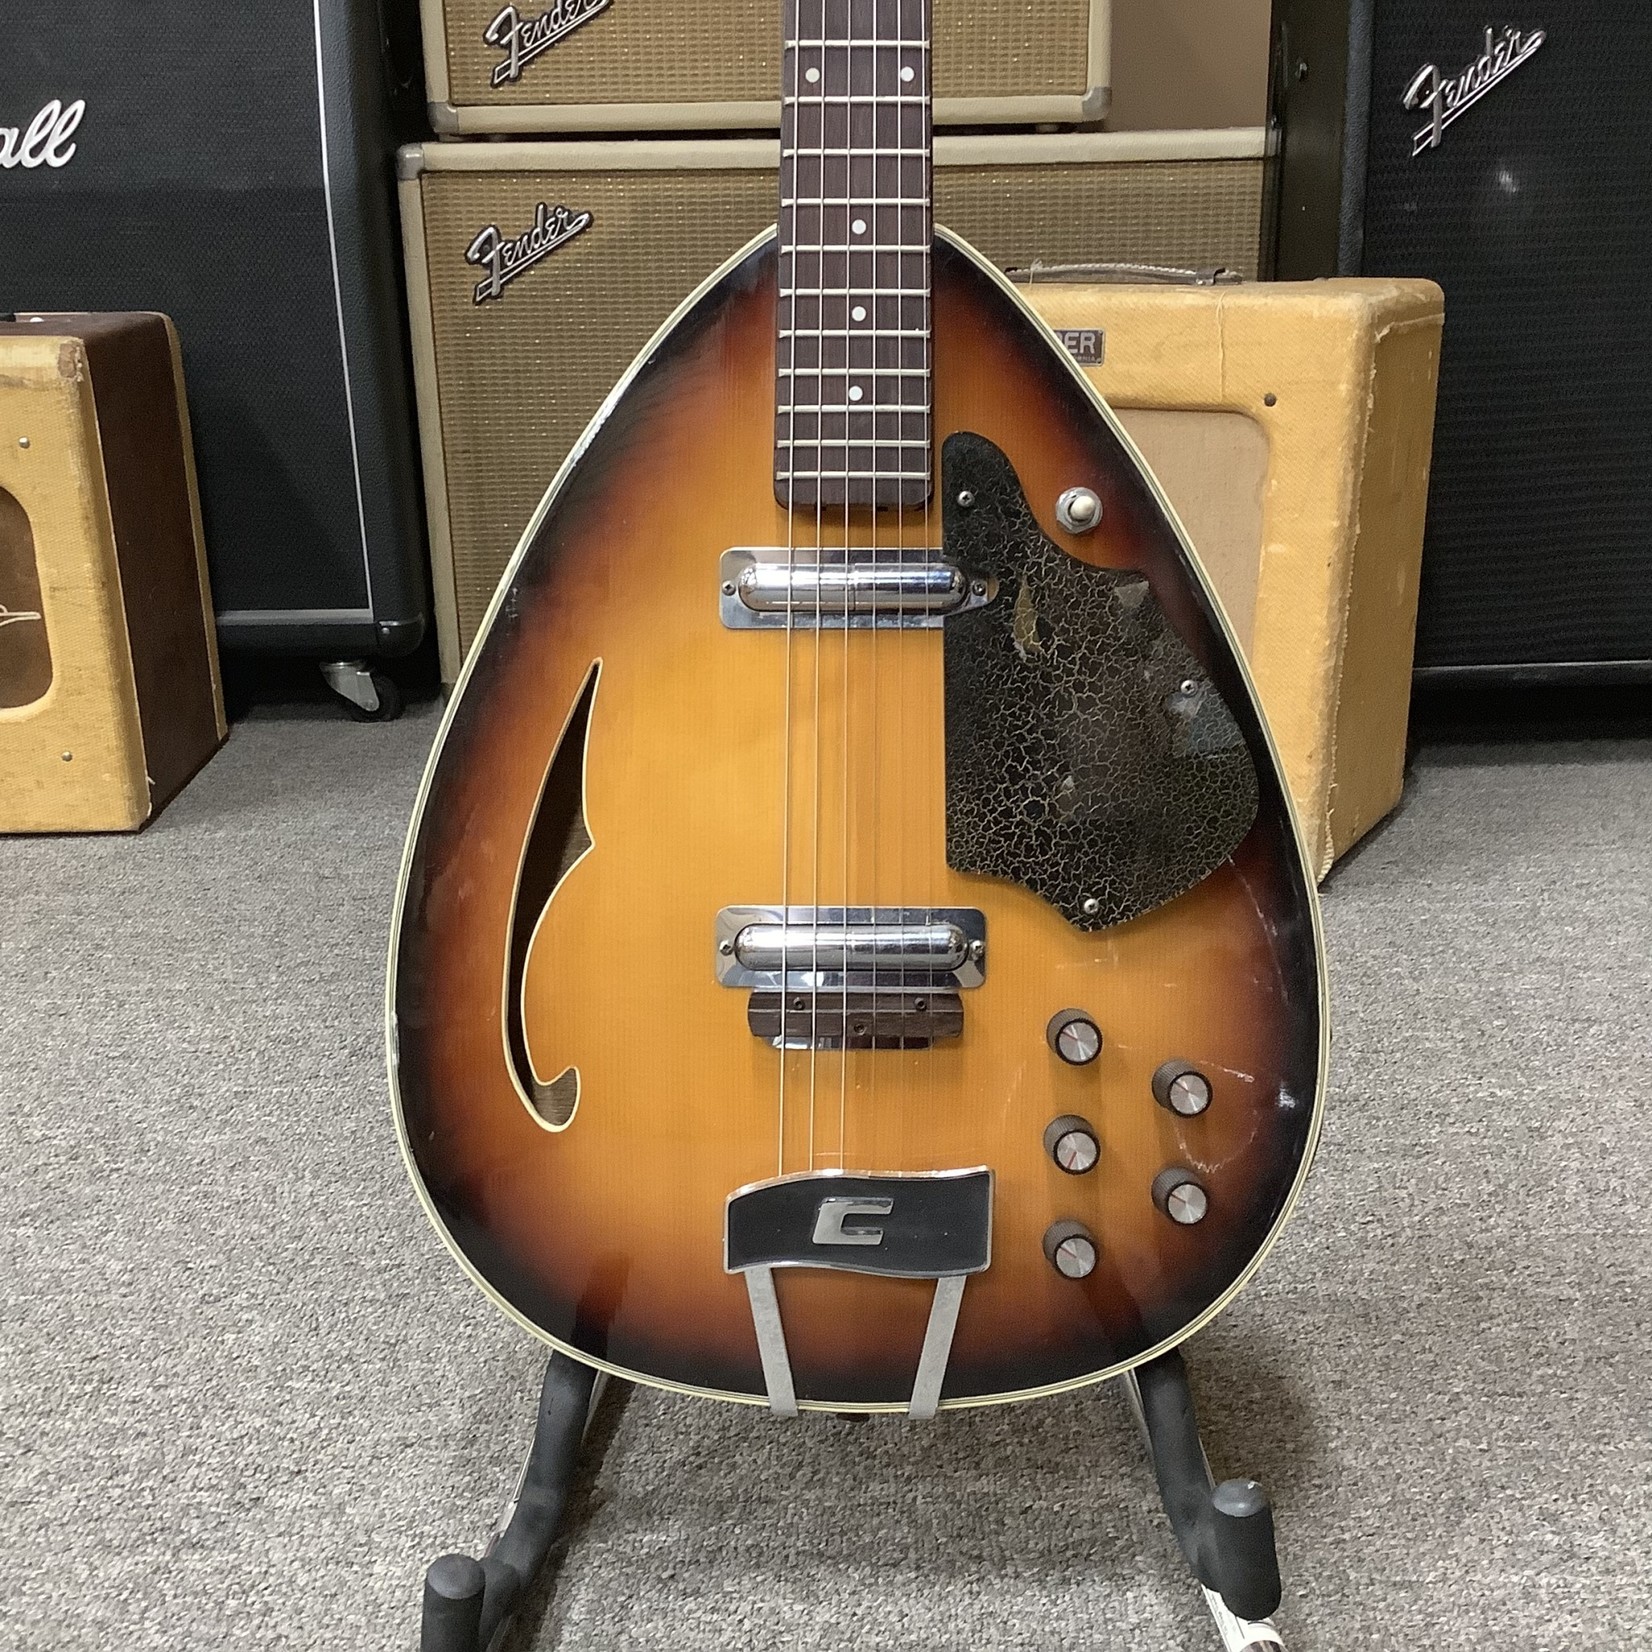 Coral 1960’s Coral Teardrop Guitar